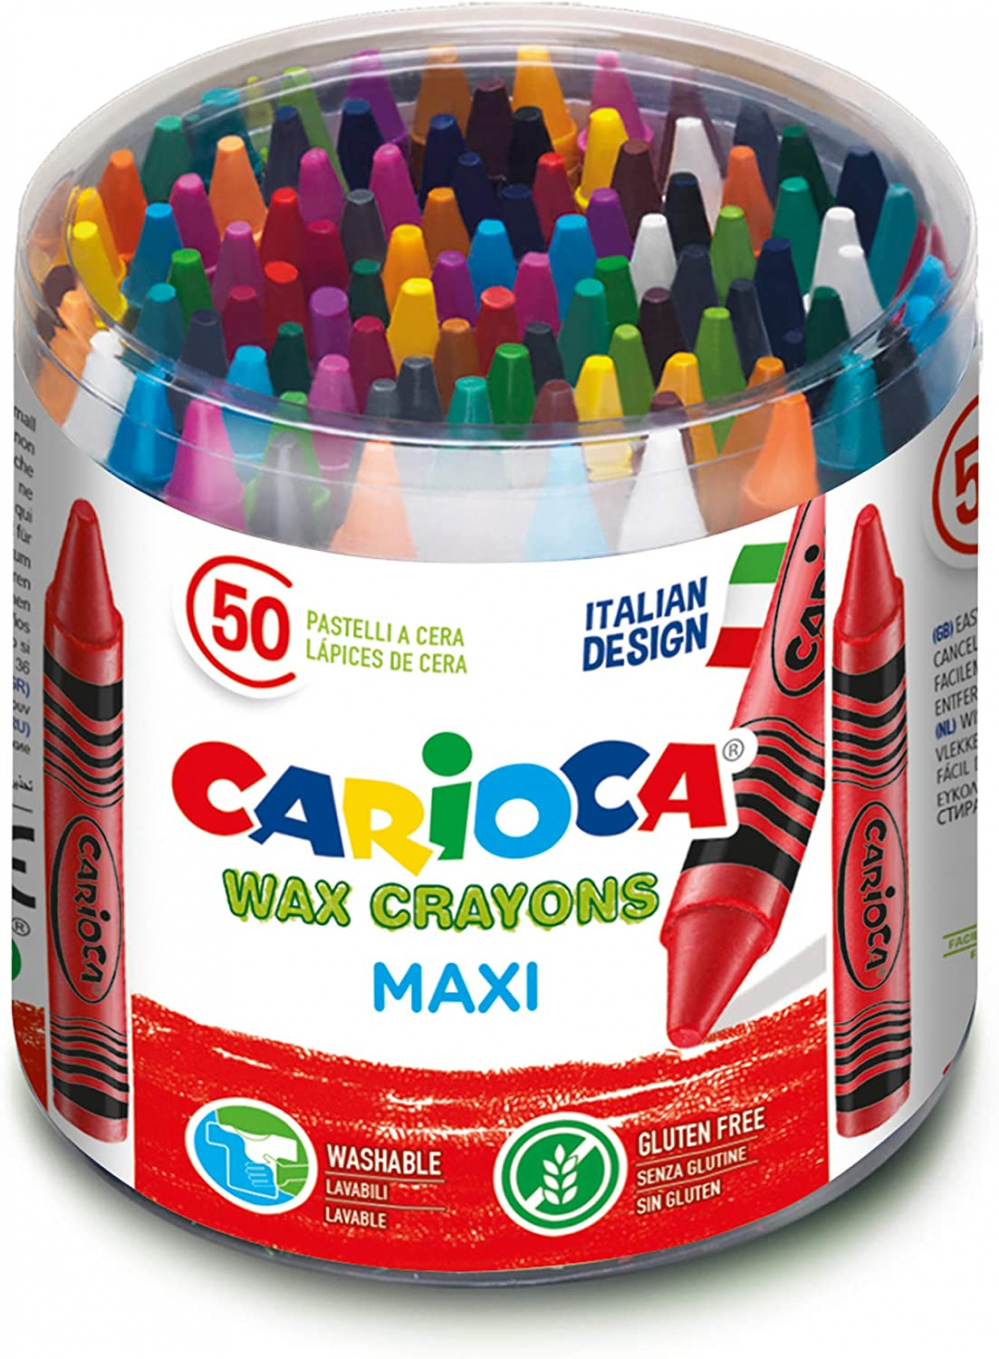 Pastelli Colorati a Matita Giotto Stilnovo Maxi, Schoolpack 144 Pezzi FILA  - F226400